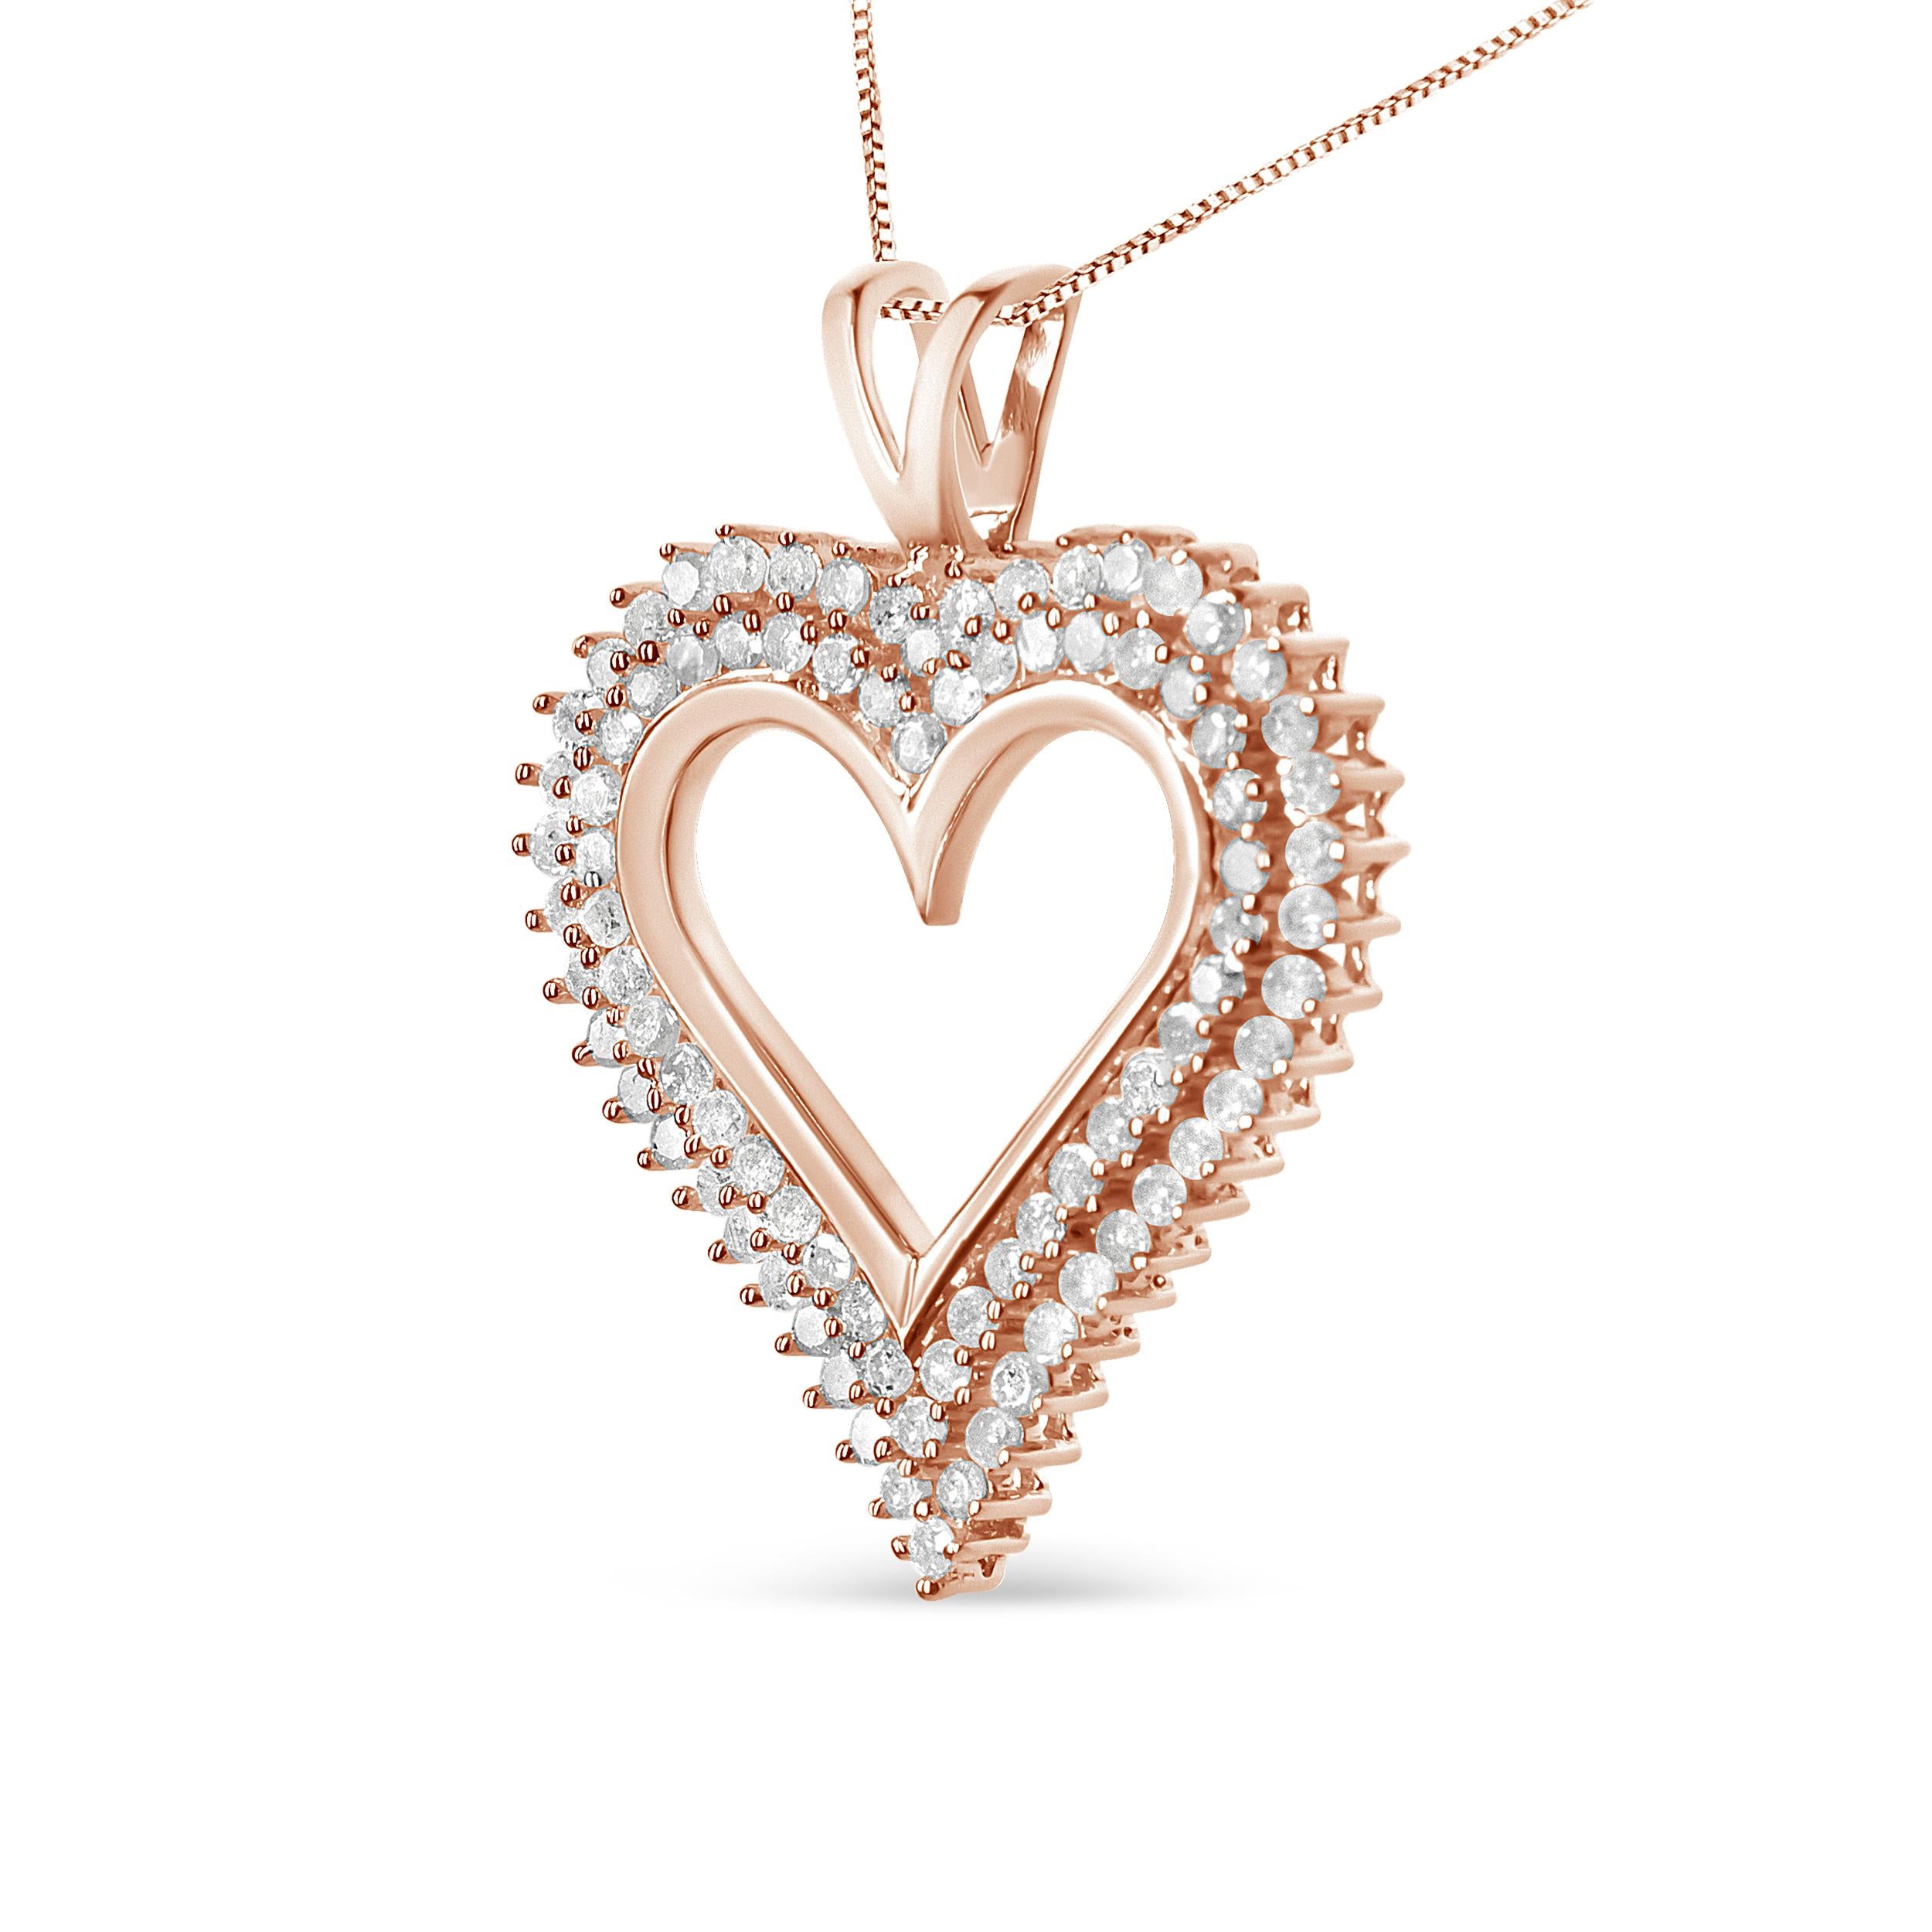 Célébrez un être cher avec ce superbe pendentif en forme de cœur en diamant. Ce collier de diamants présente deux rangées de diamants ronds sertis sur le bord de ce cœur ouvert en argent sterling 925, avec une chaîne assortie munie d'un fermoir à